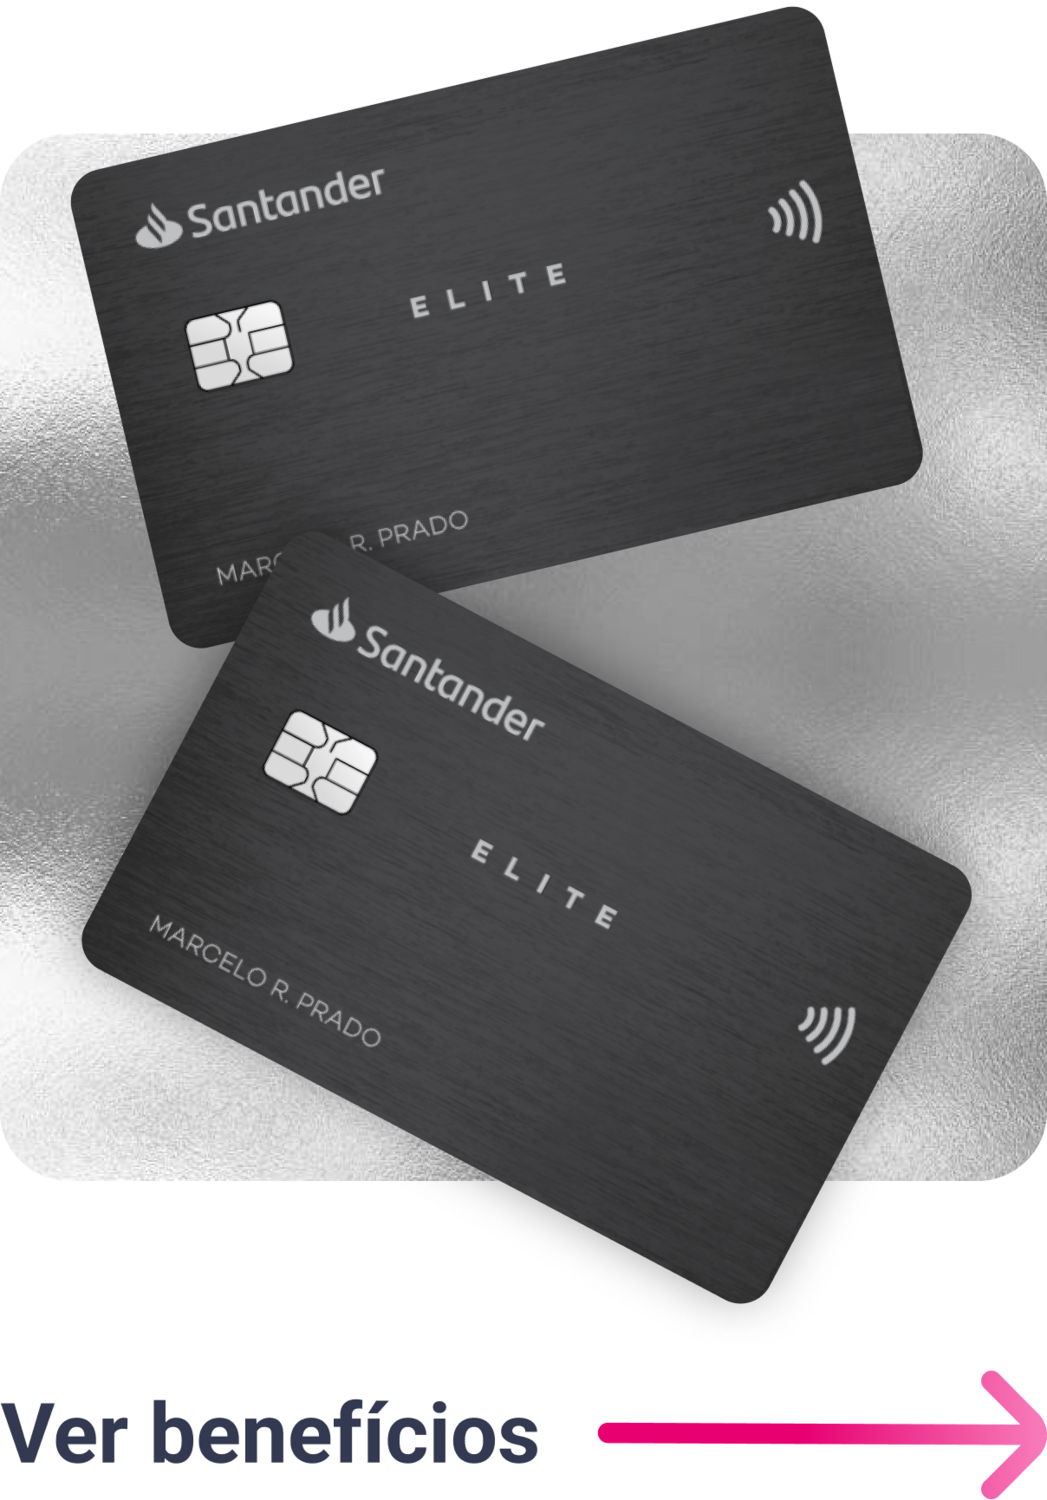 cartão de crédito Santander Unique